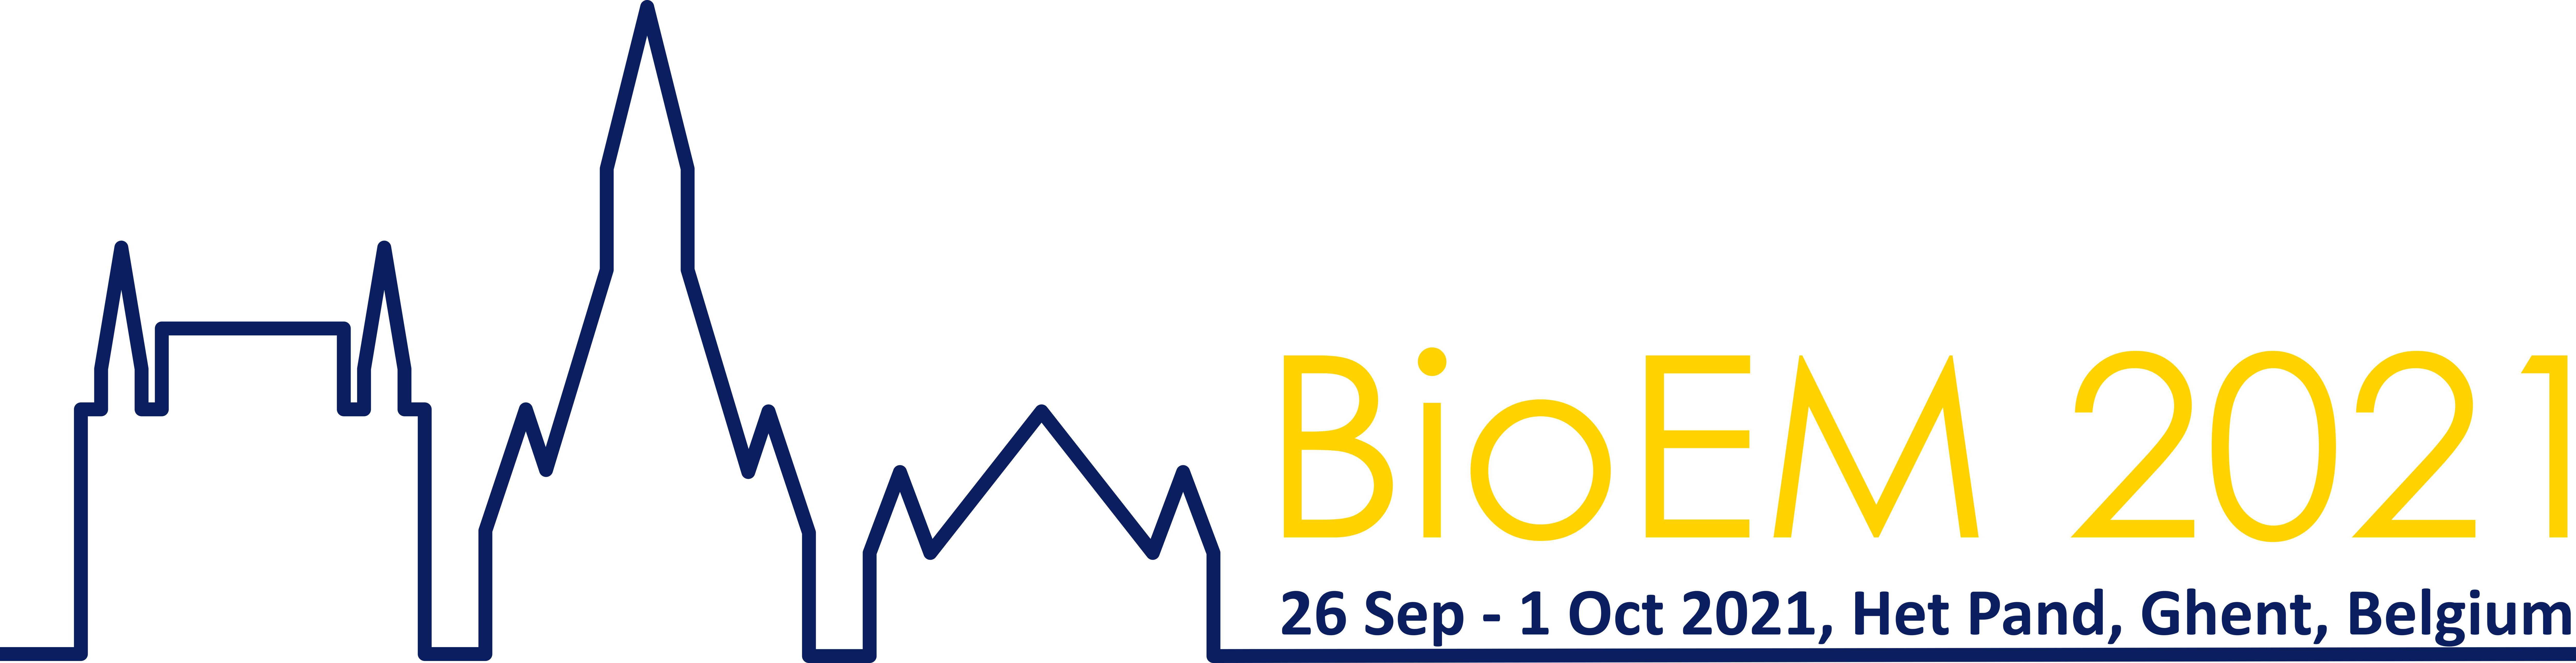 BioEM2021 banner